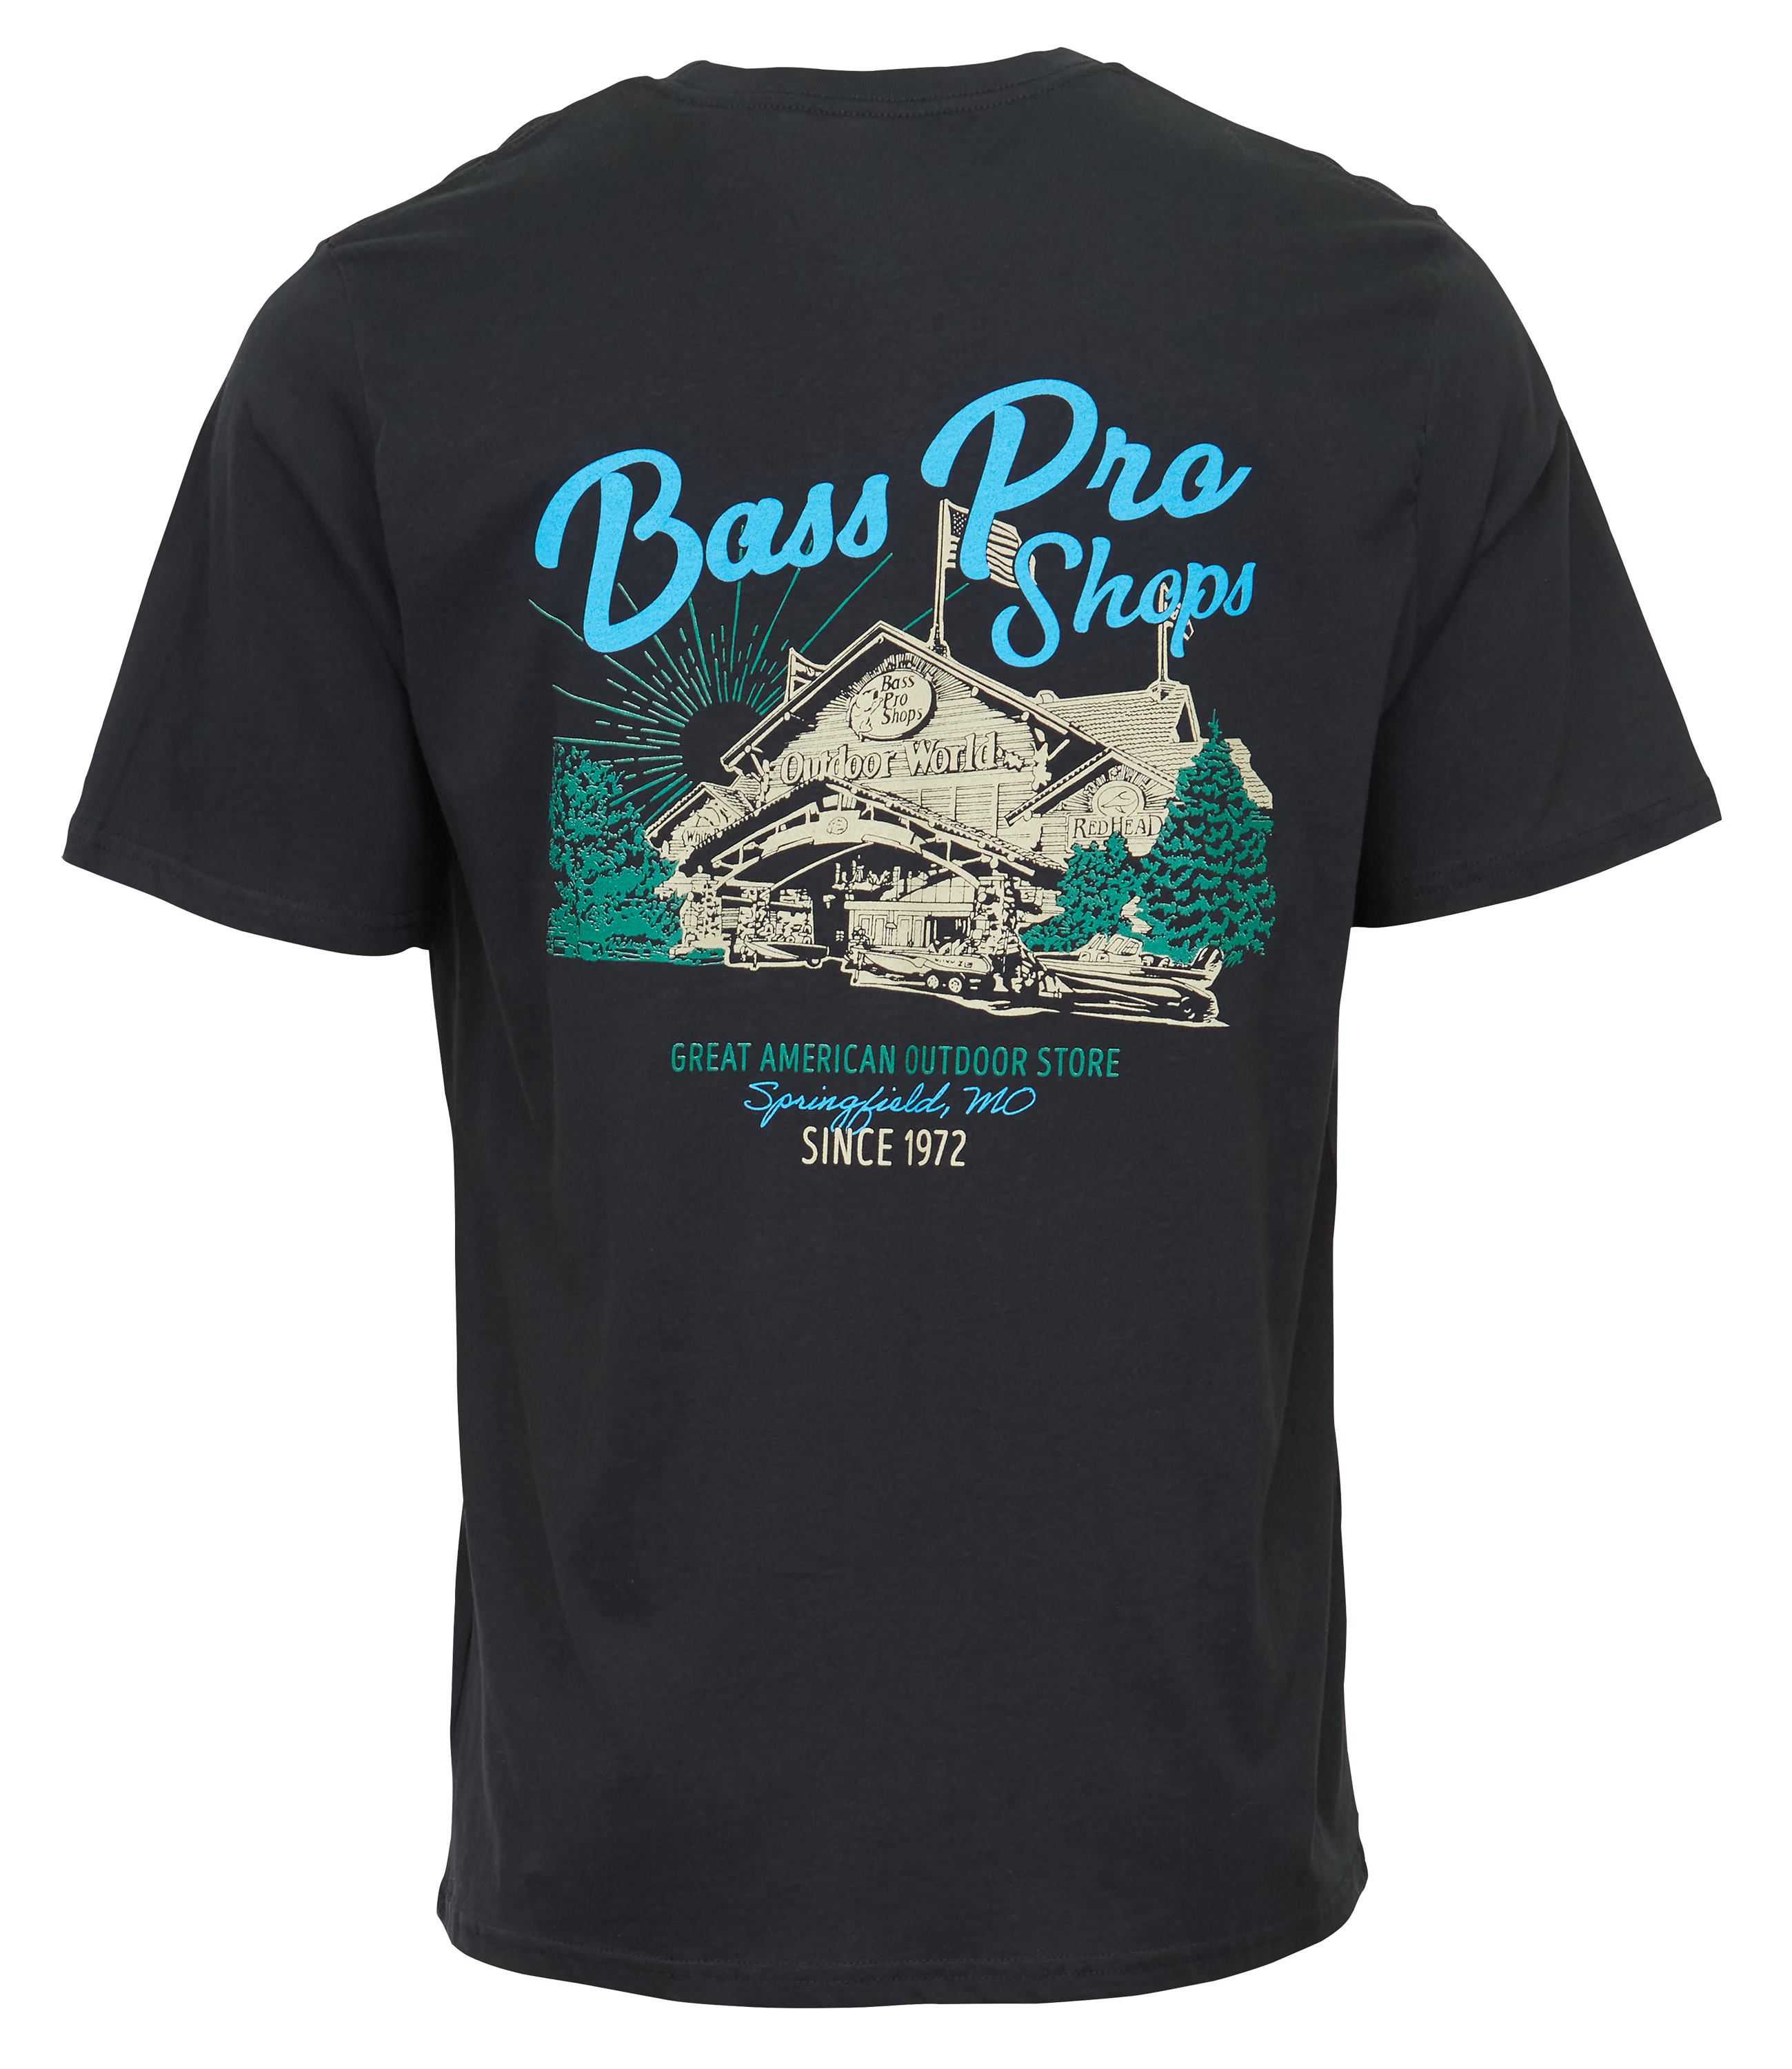 Bass Pro Shops Scenic Short-Sleeve T-Shirt for Men